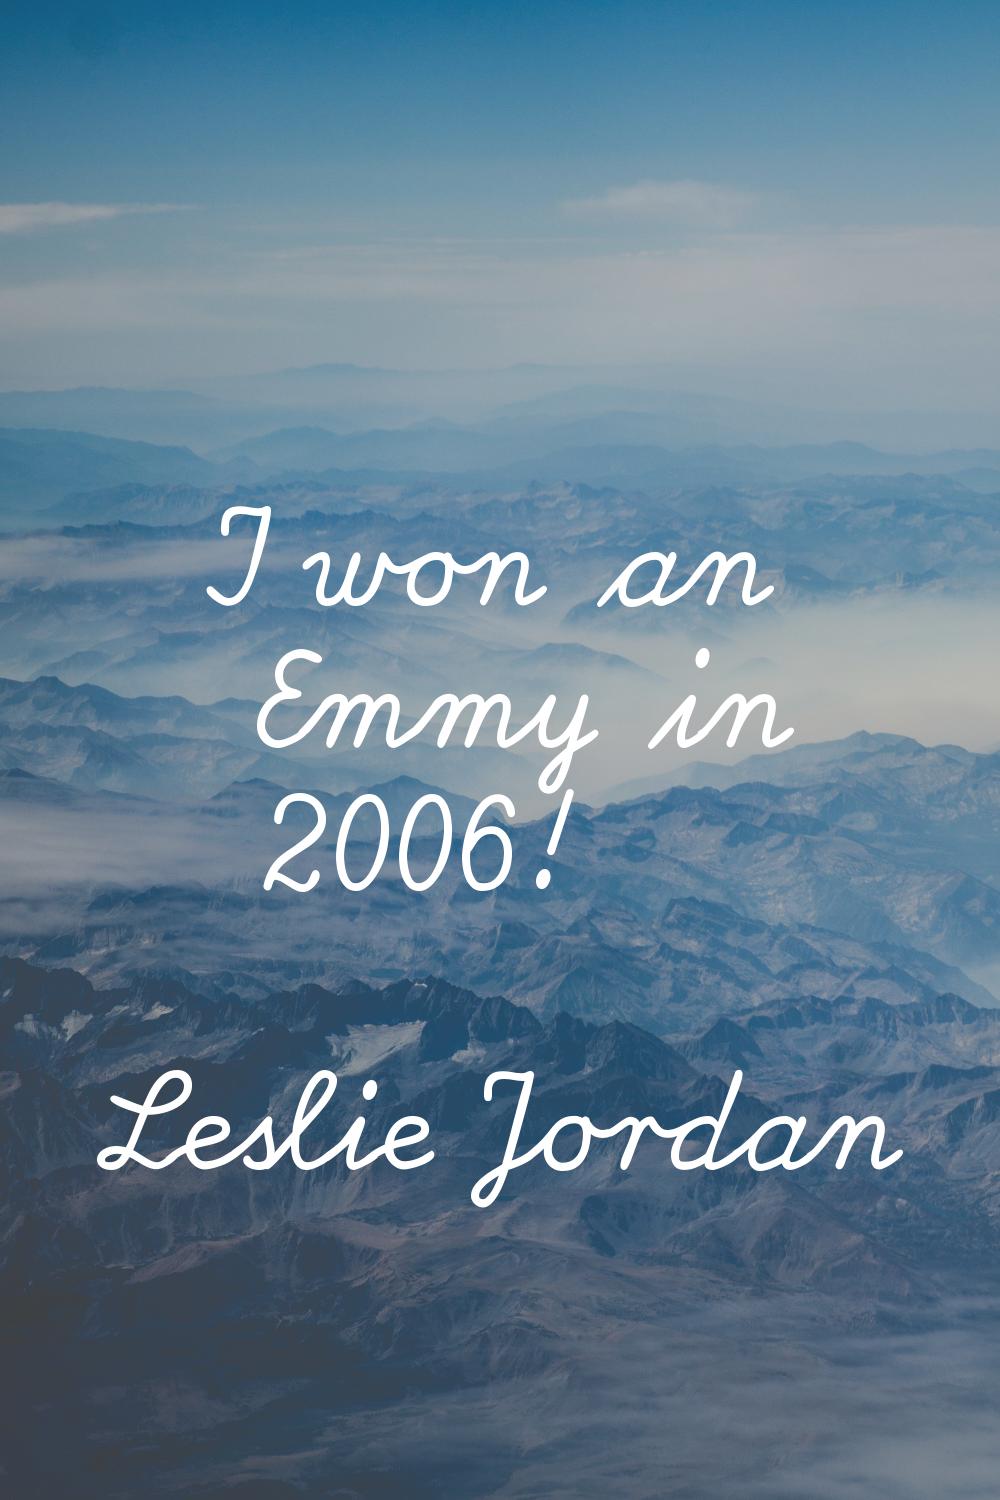 I won an Emmy in 2006!